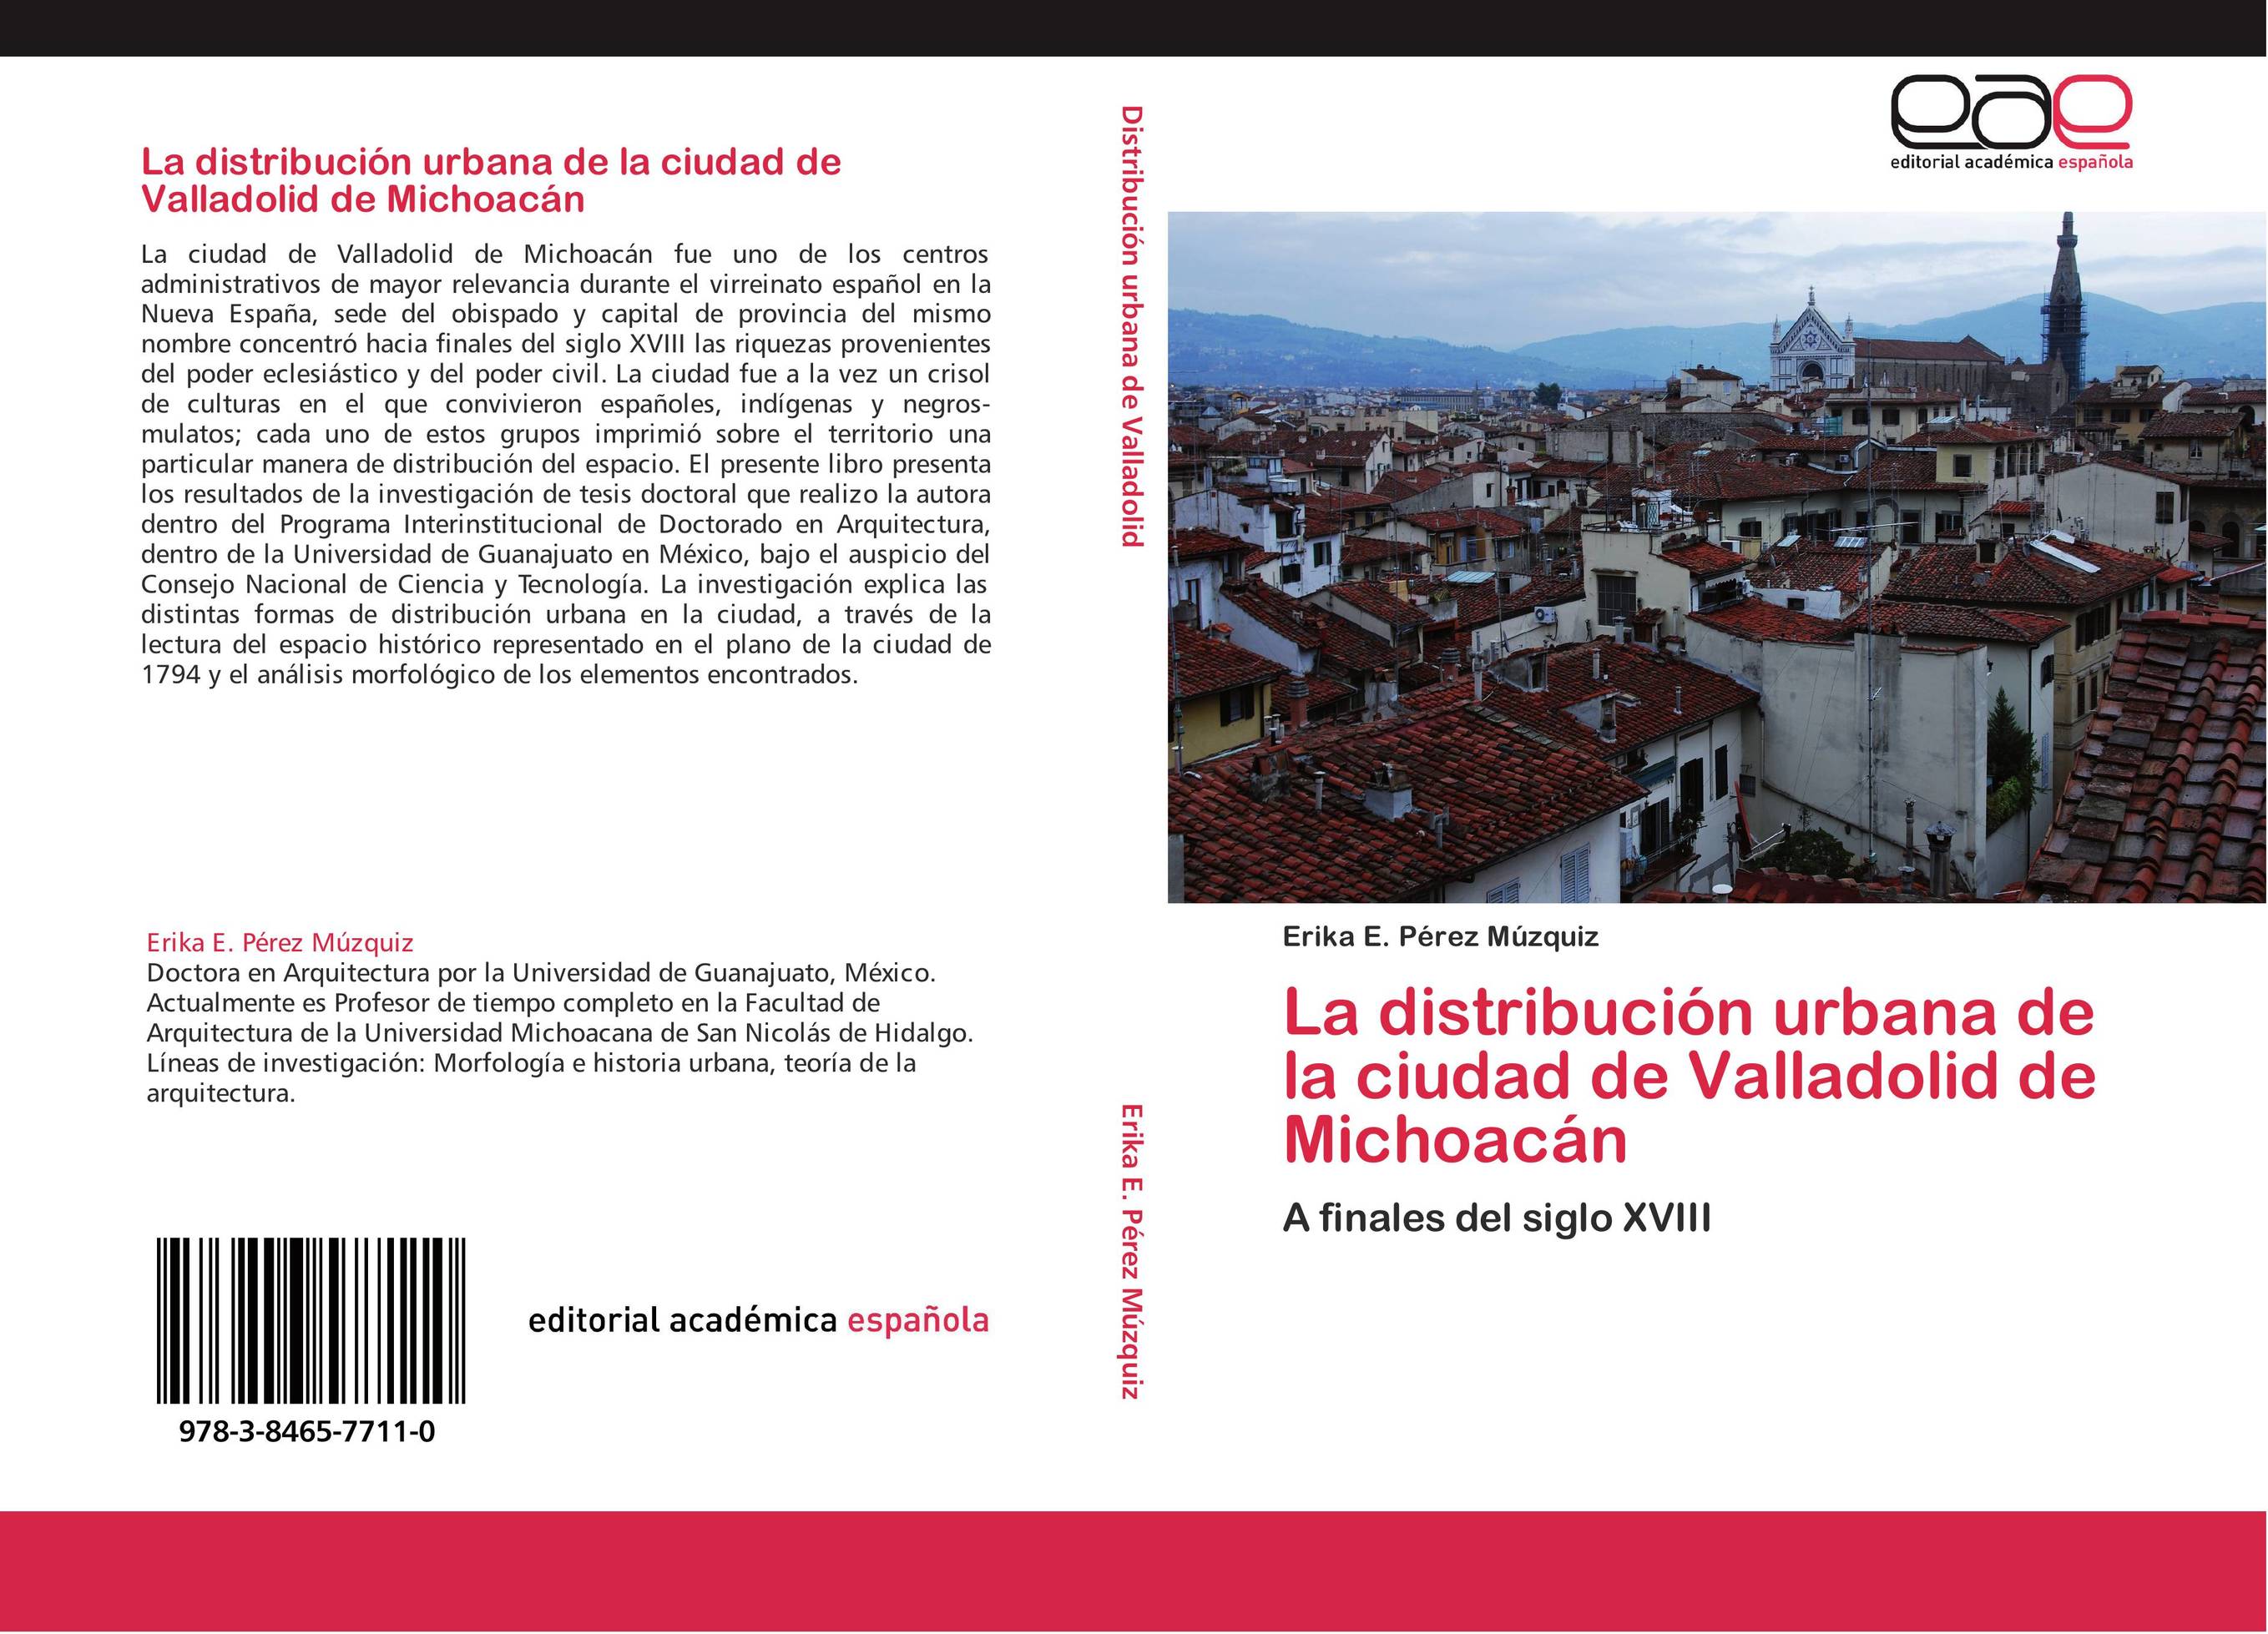 La distribución urbana de la ciudad de Valladolid de Michoacán